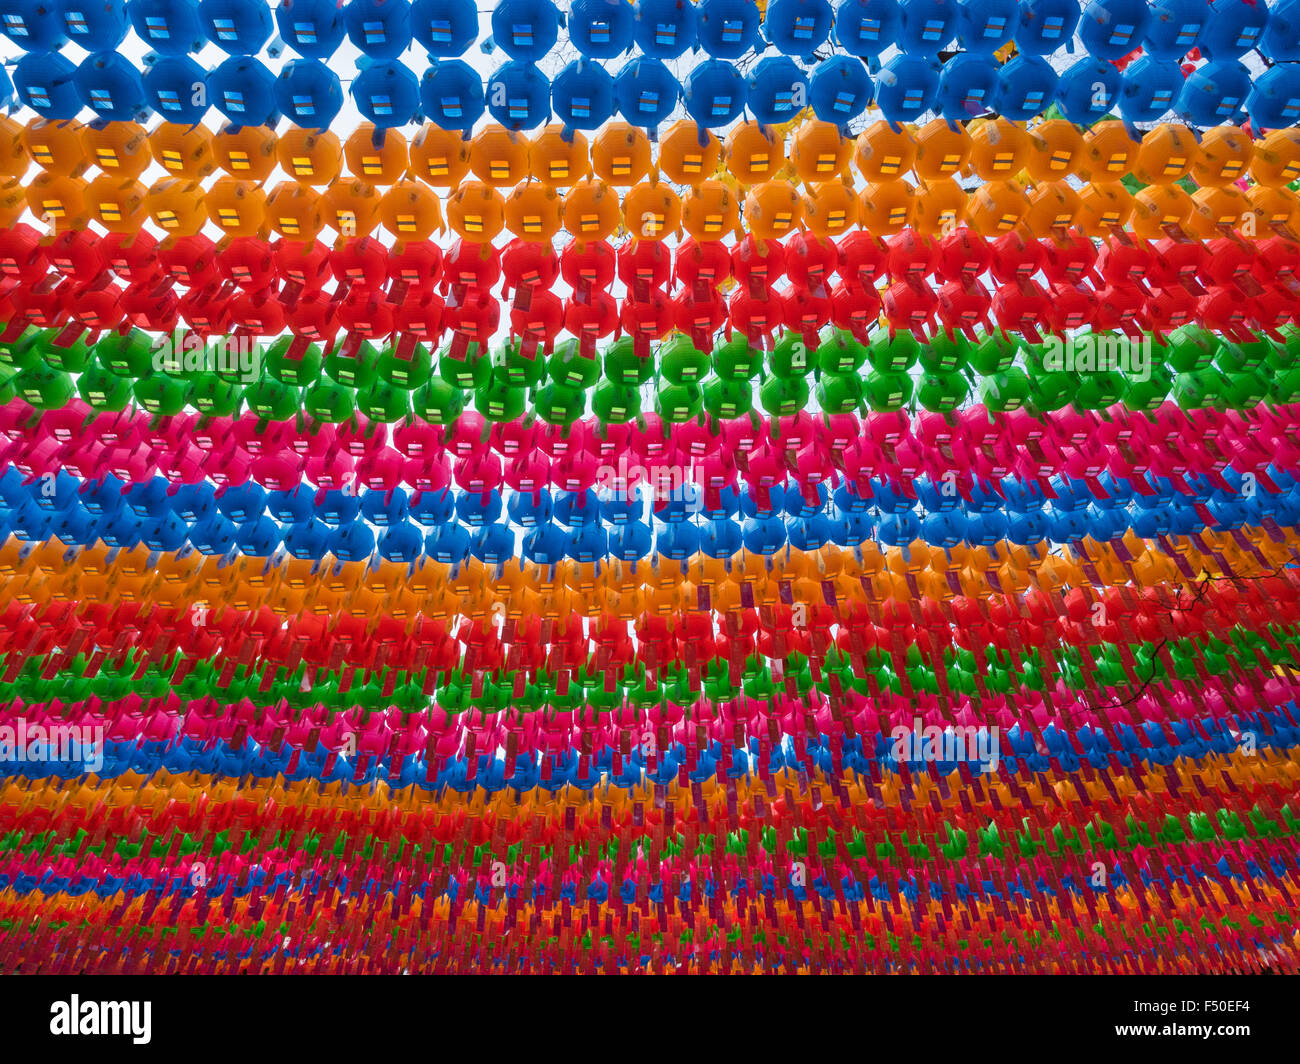 Des milliers de lanternes colorés suspendus pour la naissance de Bouddha à Séoul, Corée du Sud Banque D'Images